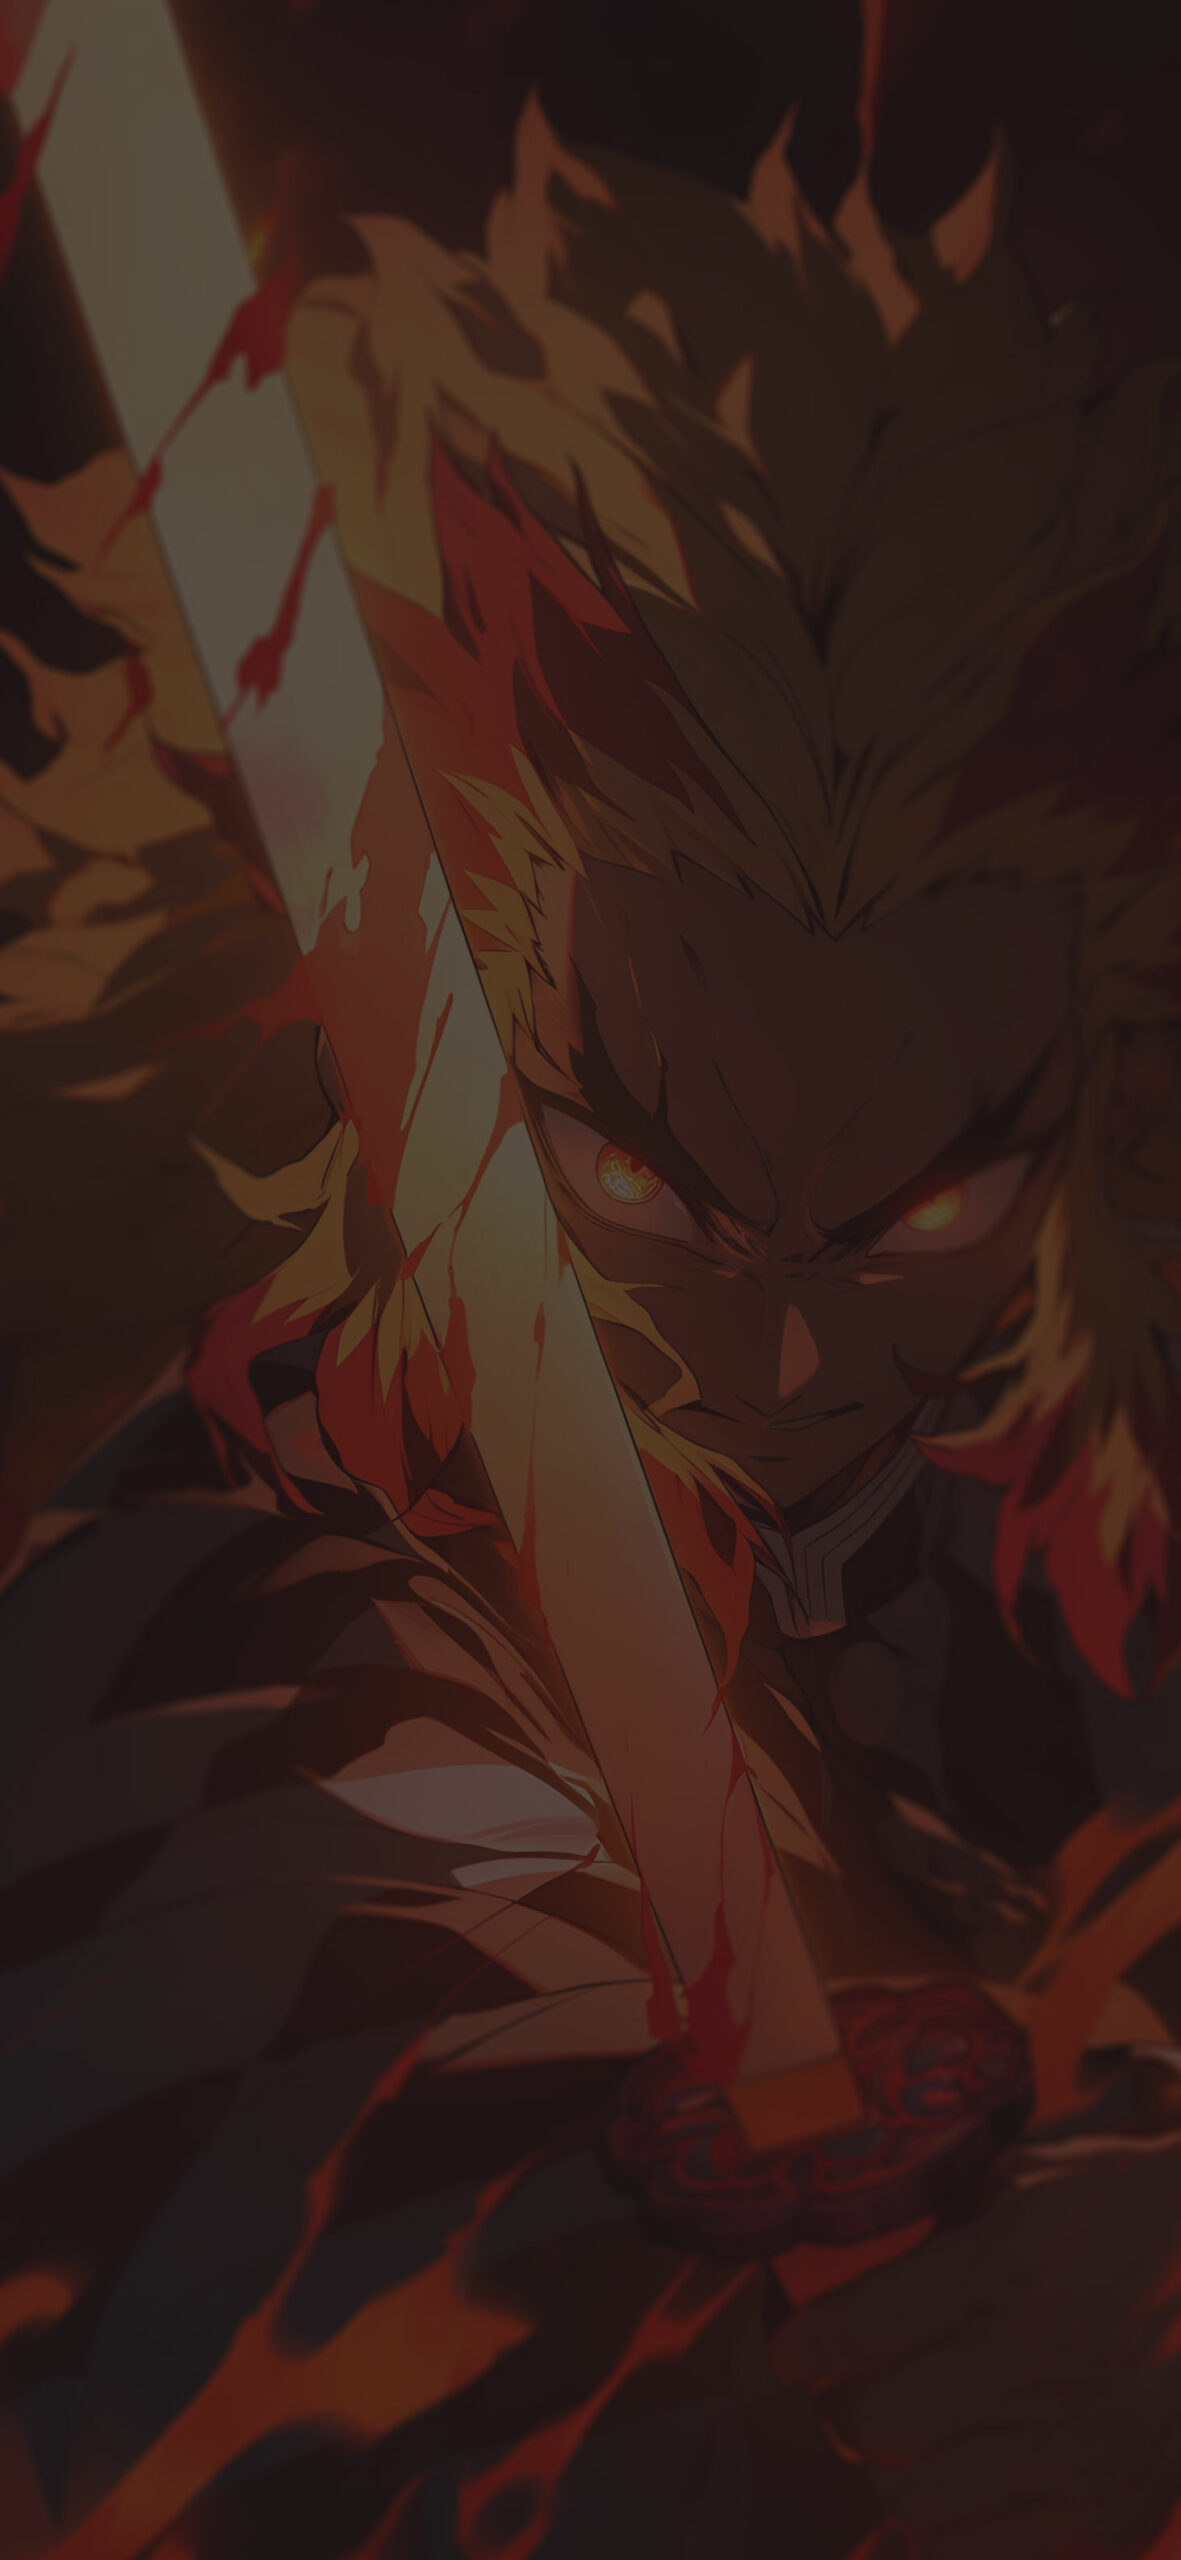 Demon slayer fierce kyōjurō rengoku wallpaper Epic anime art